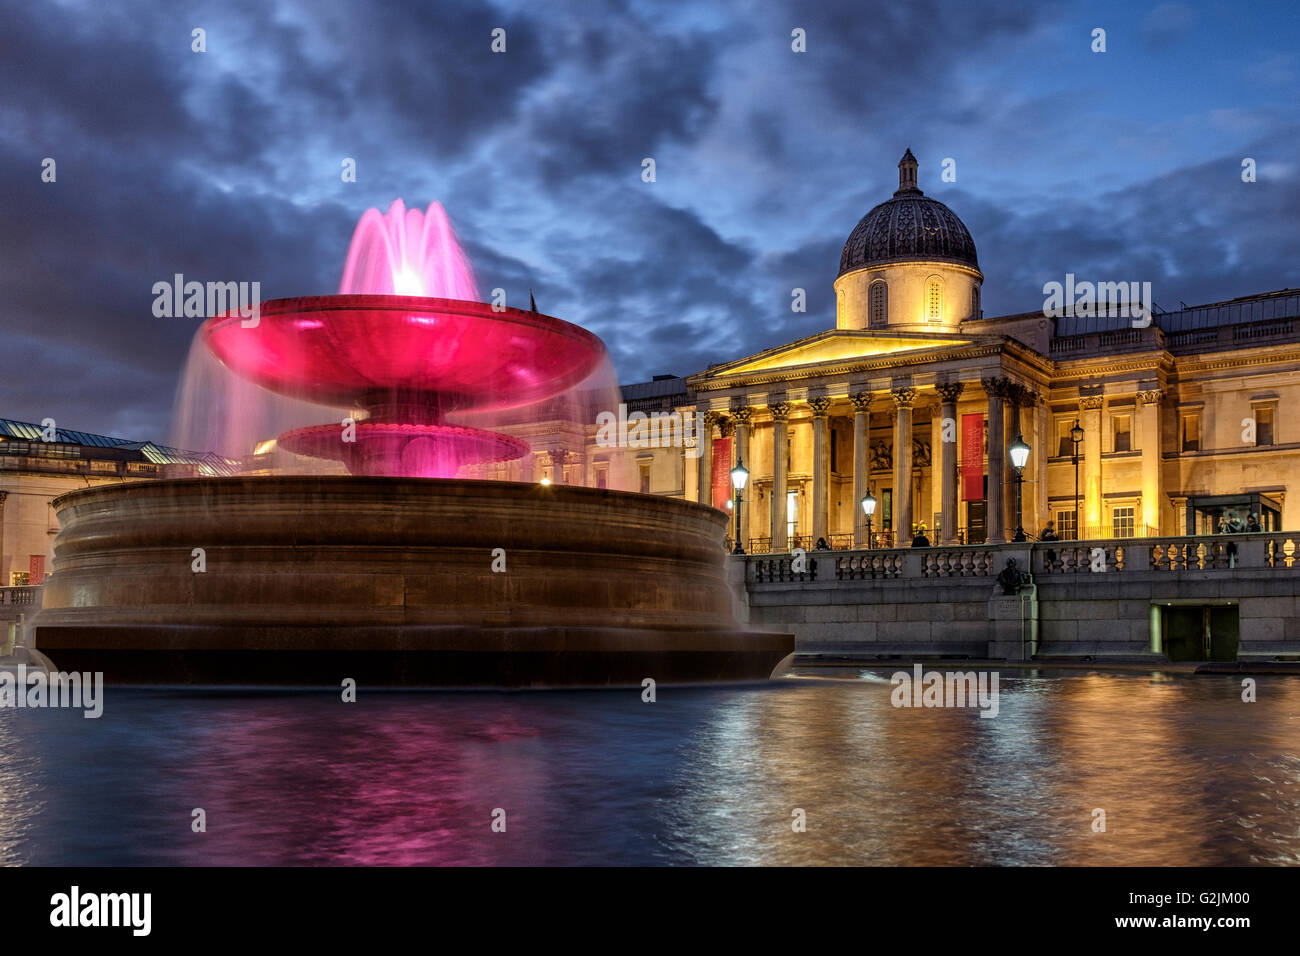 Fontaine illuminée et la nuit Galleryat,Trafalgar Square, Londres, Angleterre Banque D'Images